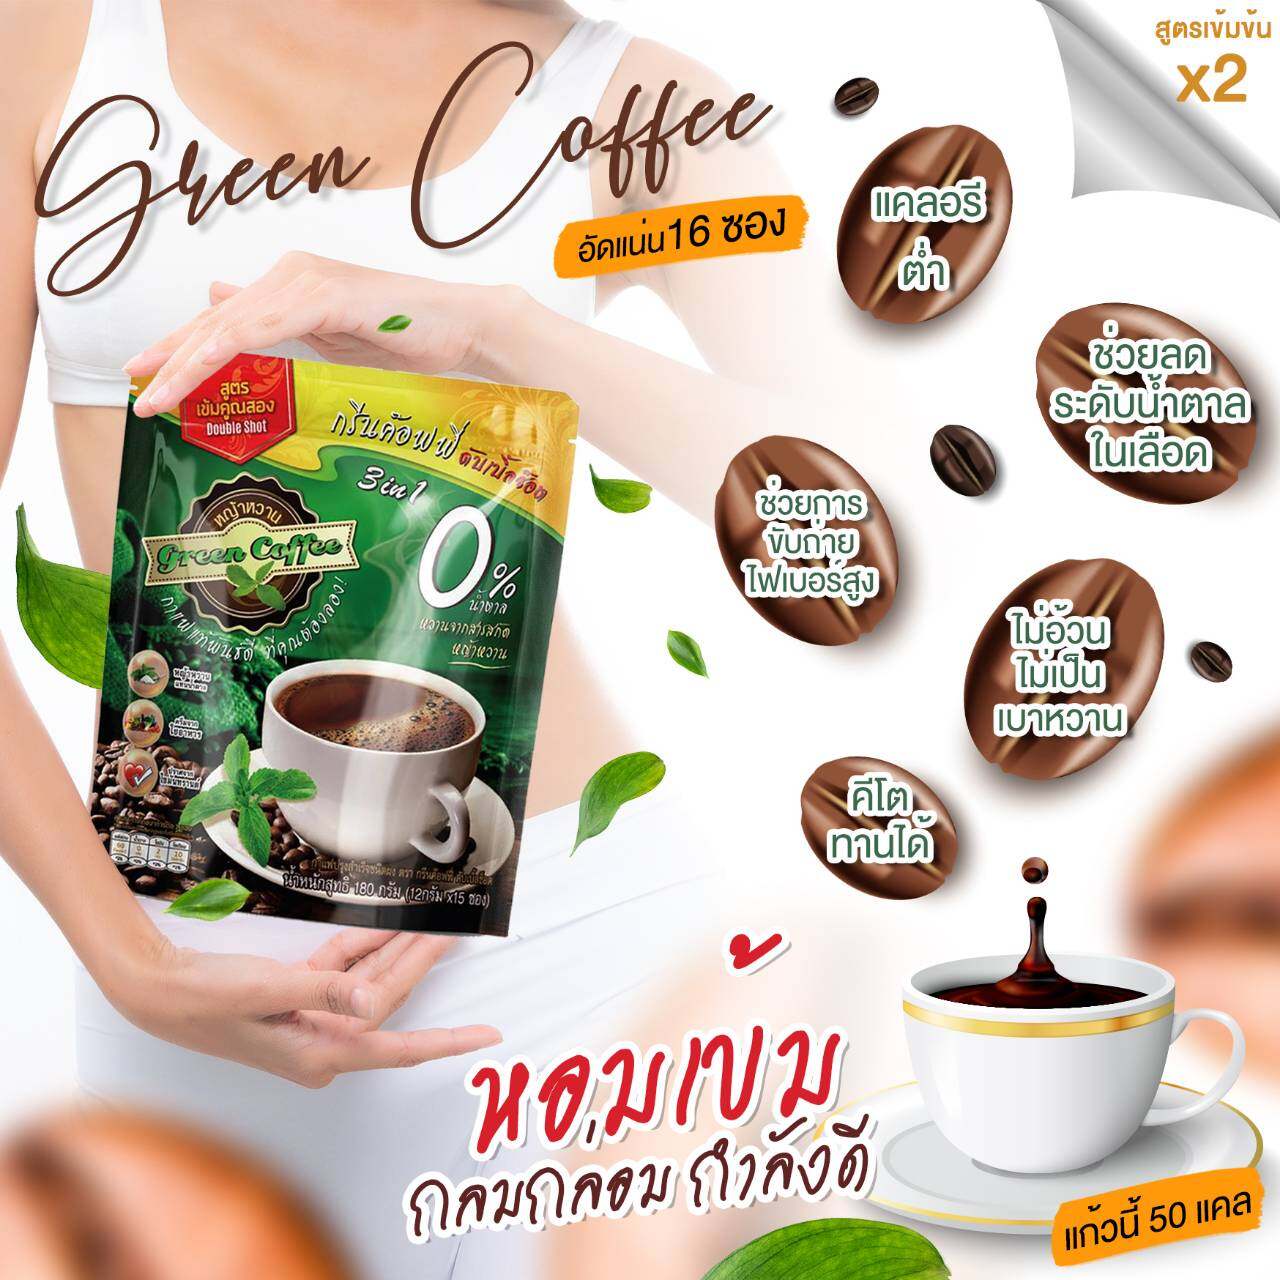 [Keto] กาแฟหญ้าหวาน  ใช้ครีมจากใยอาหาร  กรีนค๊อฟฟี่ ดับเบิ้ลช๊อต จำนวน 16 ซอง